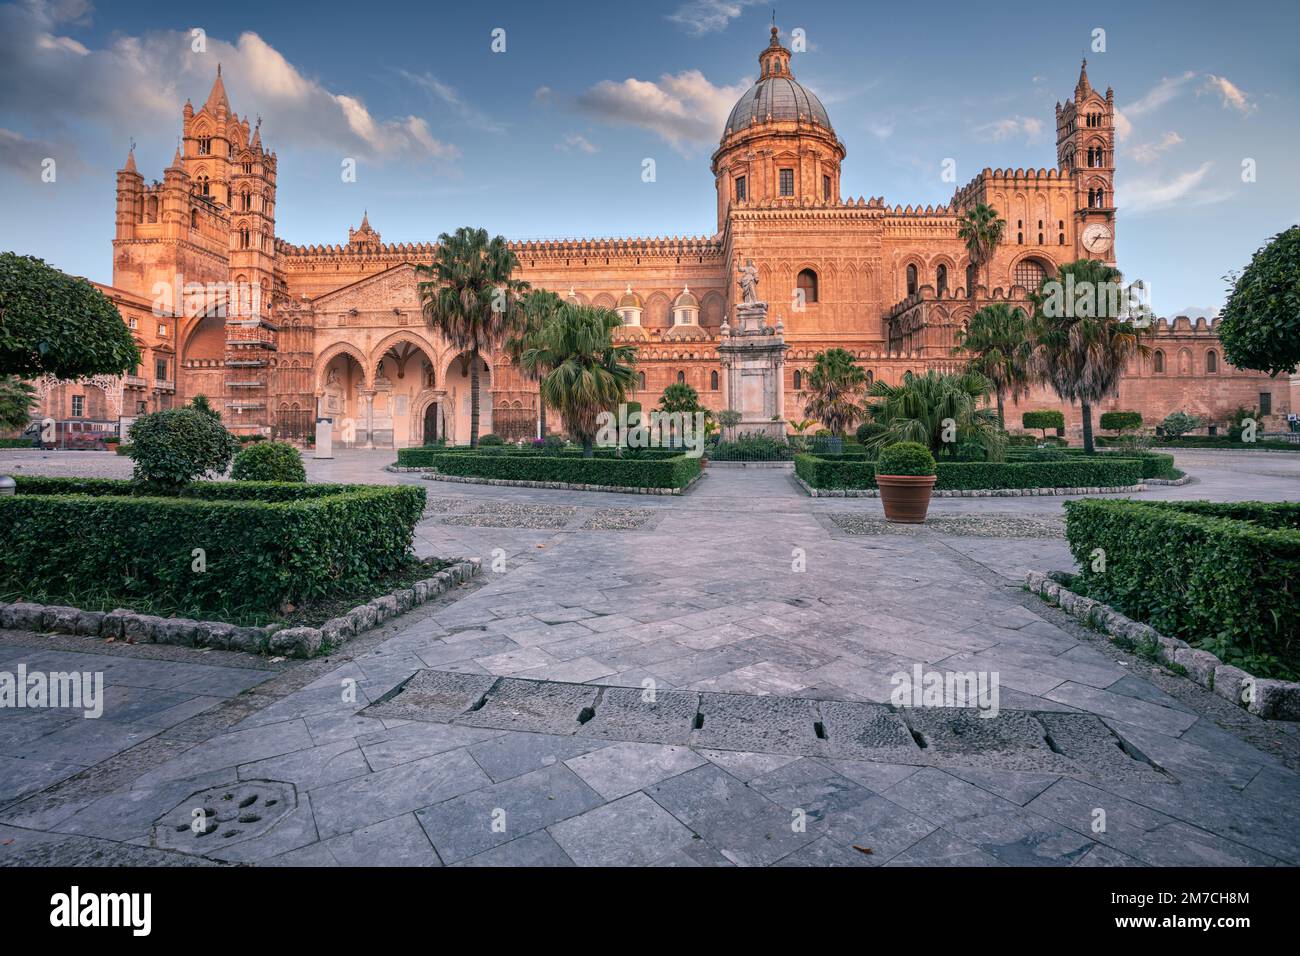 Cattedrale di Palermo, Sicilia, Italia. Immagine del paesaggio urbano della famosa Cattedrale di Palermo all'alba. Foto Stock